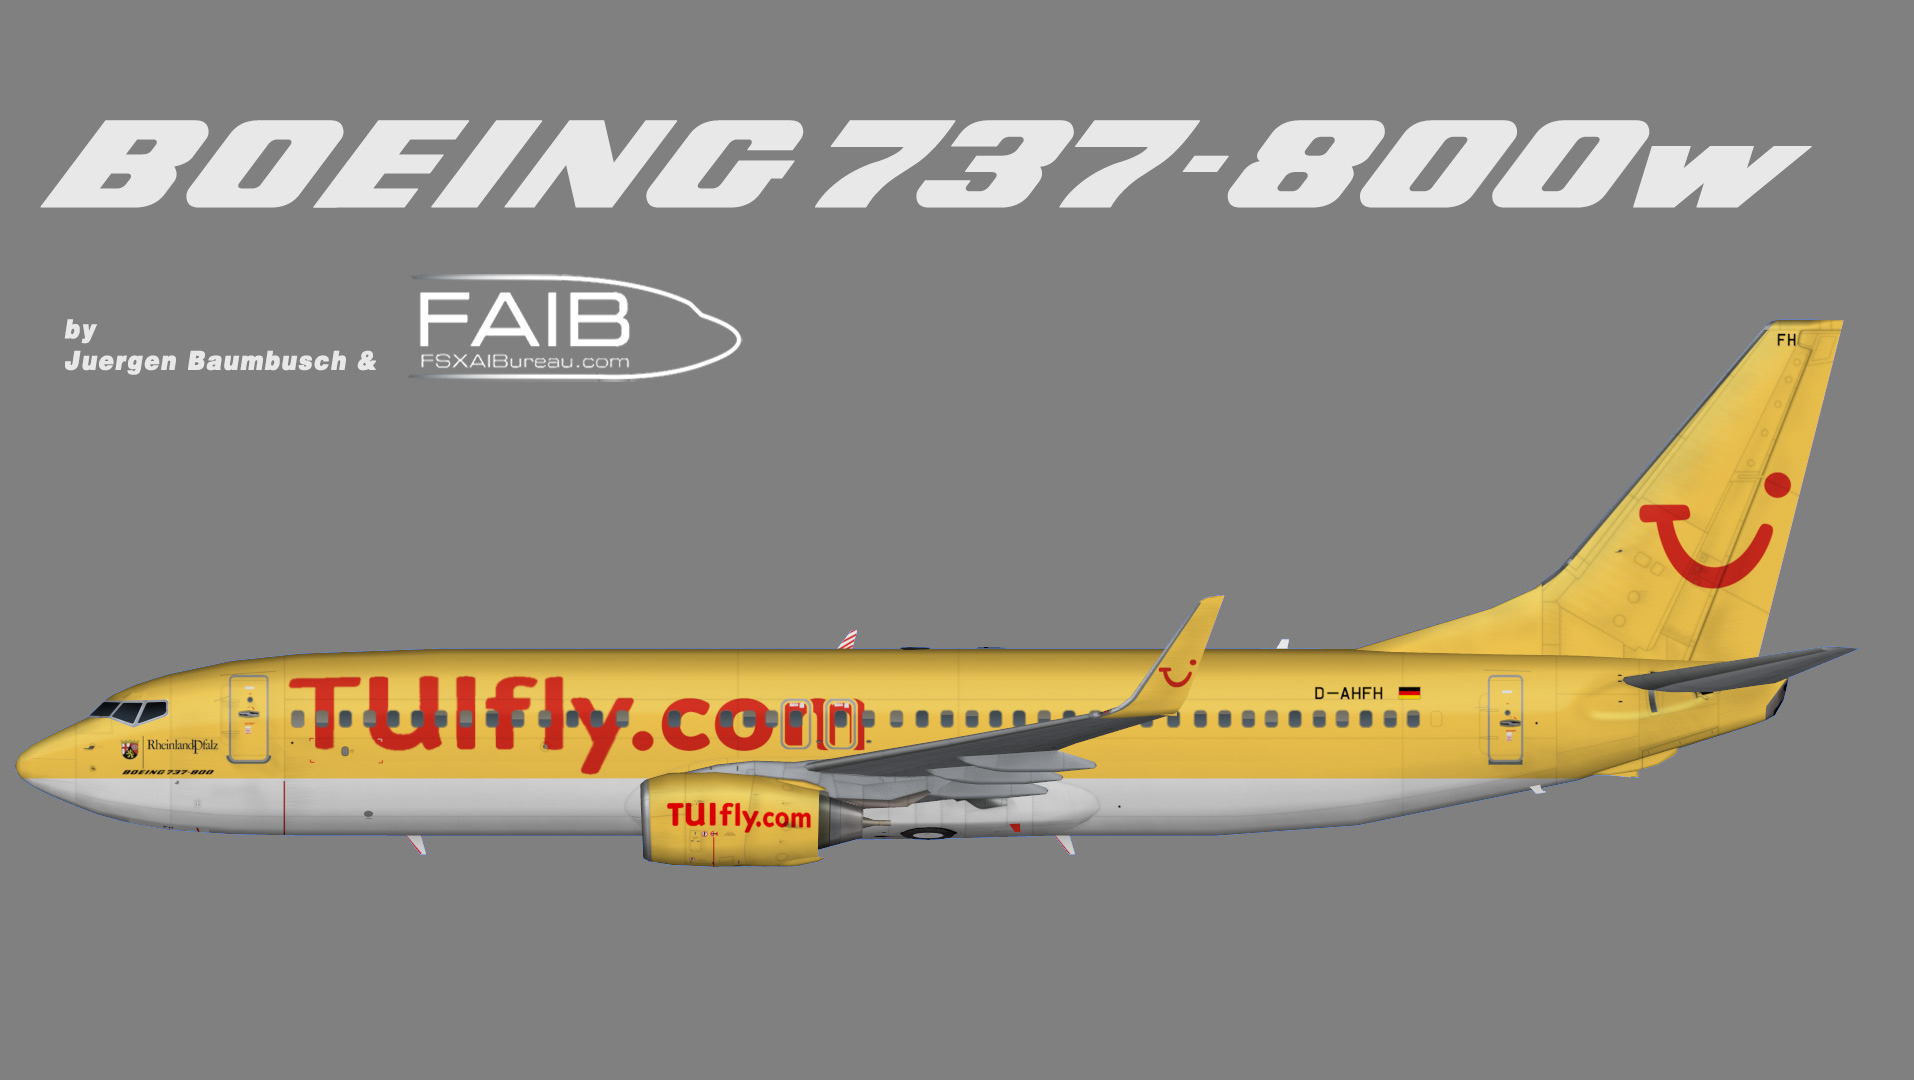 Tuifly.com Boeing 737-800w (Rheinland-Pfalz Sticker)